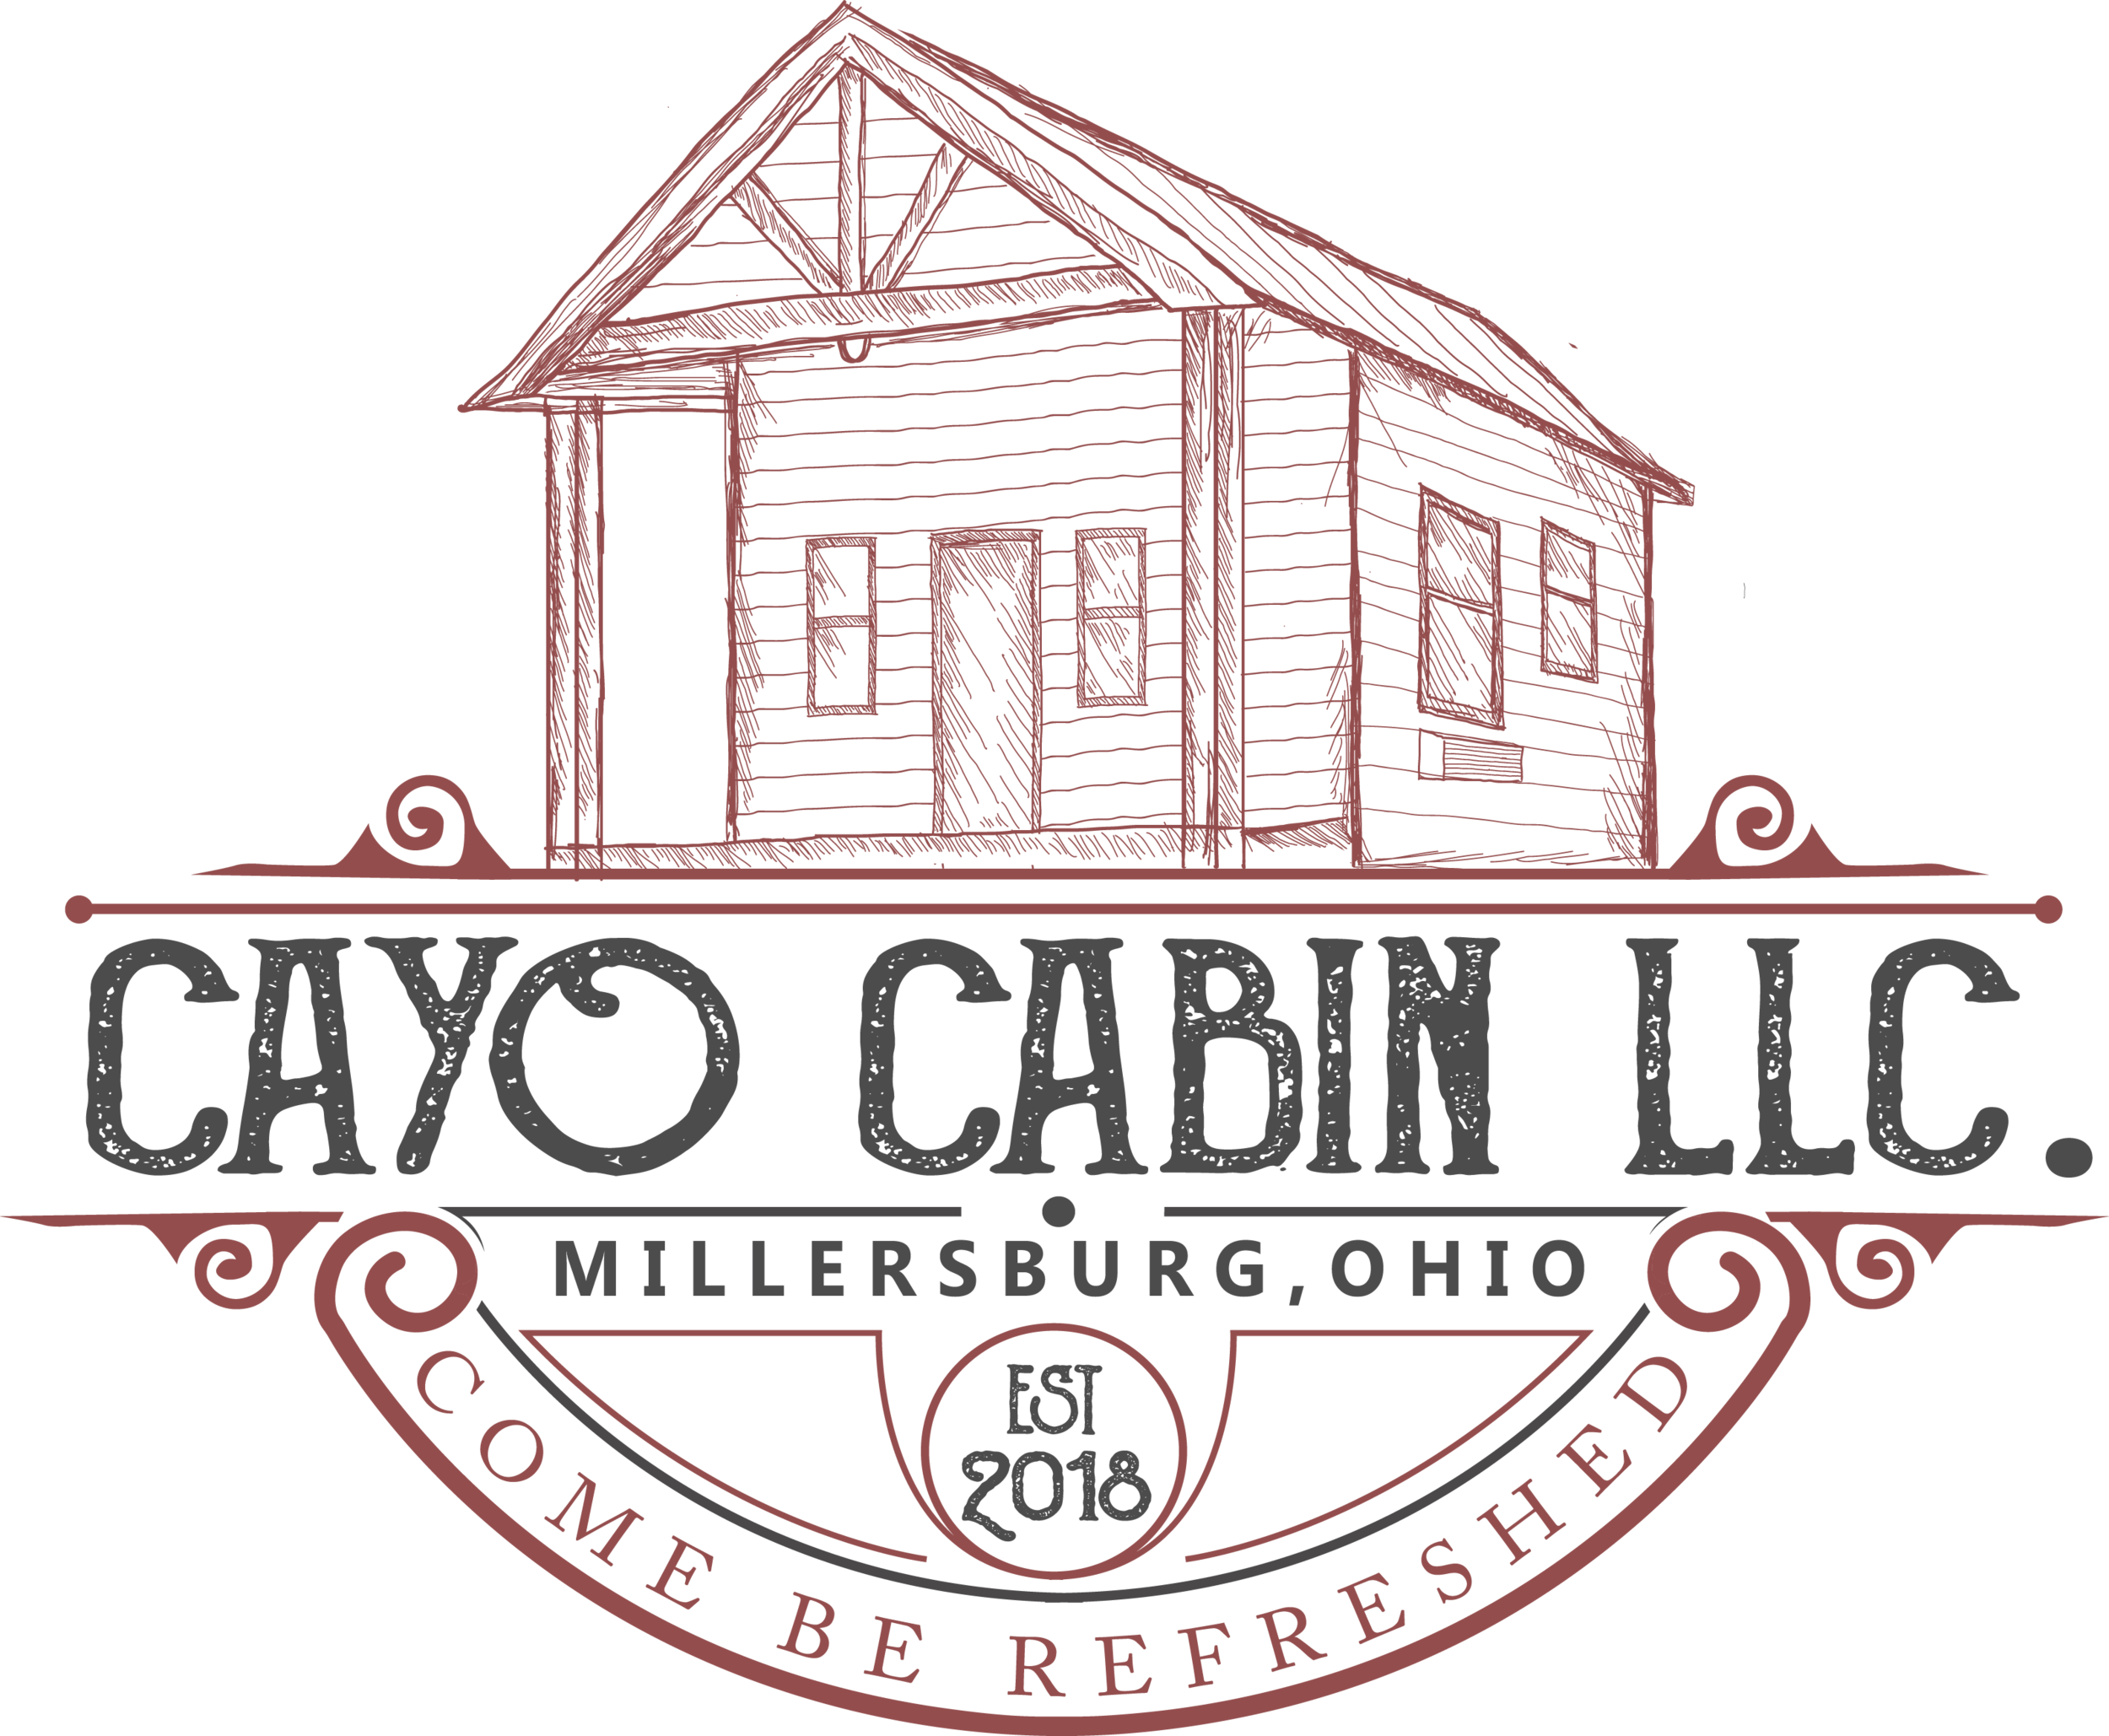 Cayo Cabin LLC.